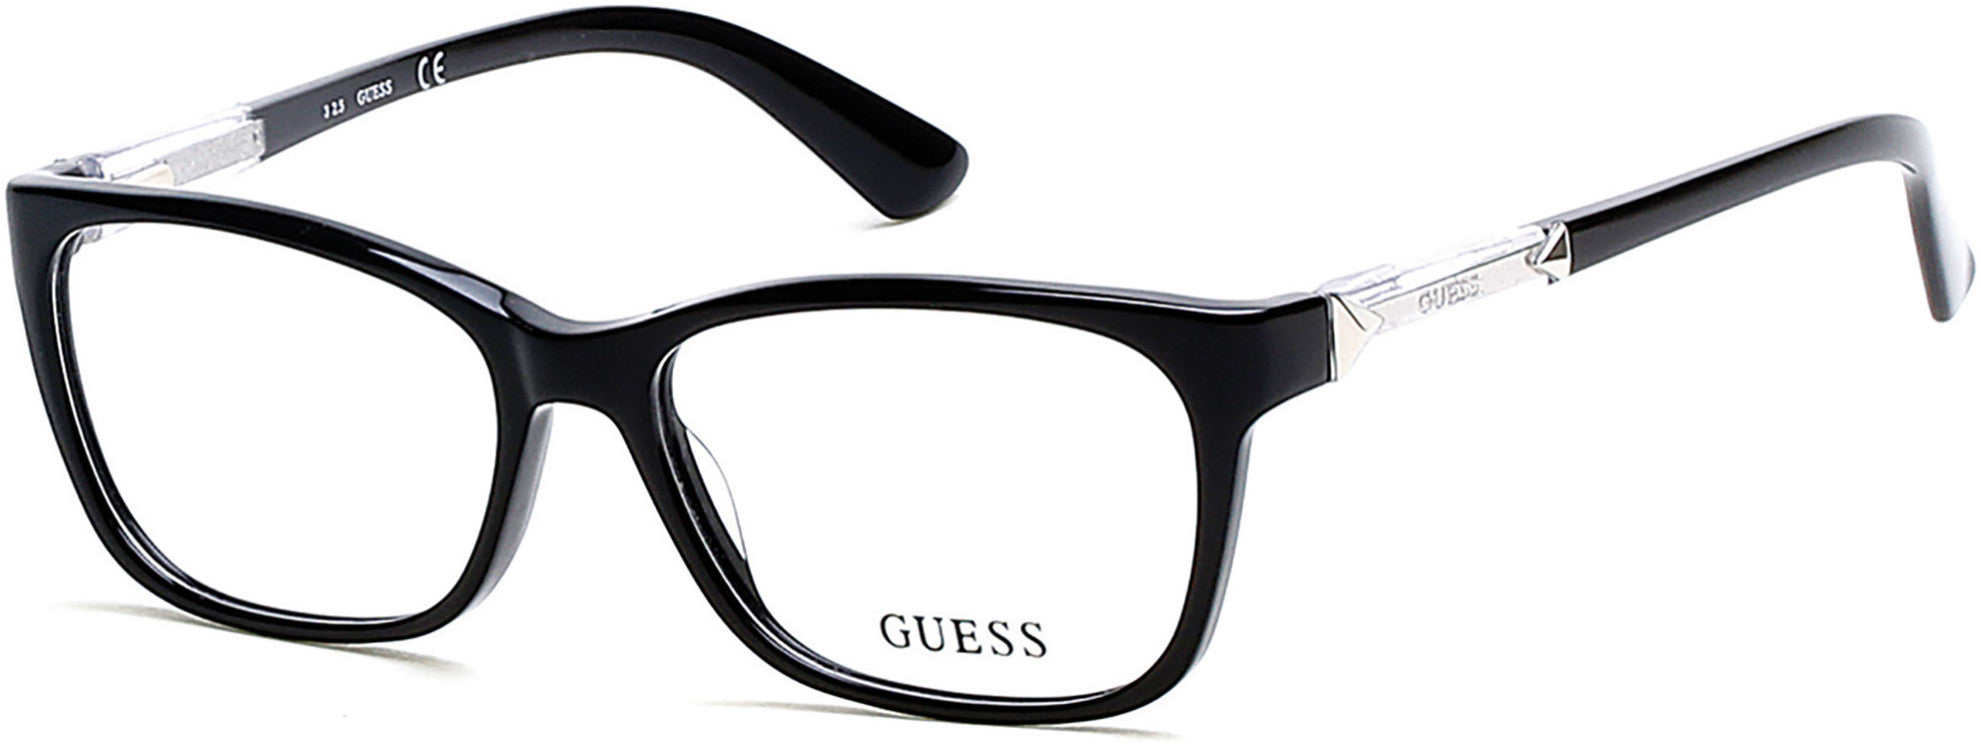 Guess GU2561 Geometric Eyeglasses 090-001 - Shiny Black